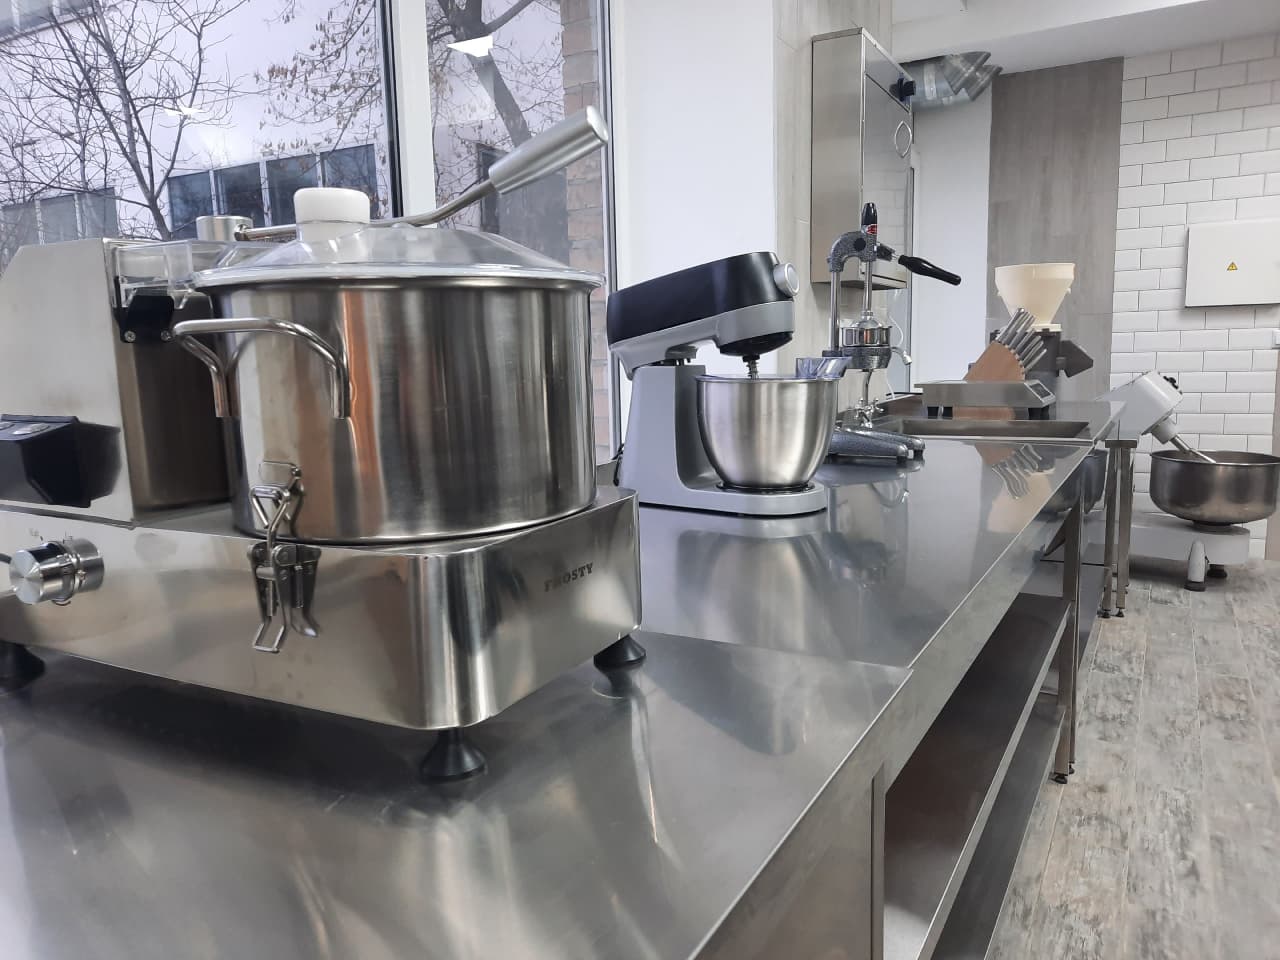 навчально-практичний центр сучасних кулінарних технологій на базі Вищого професійного училища № 33.